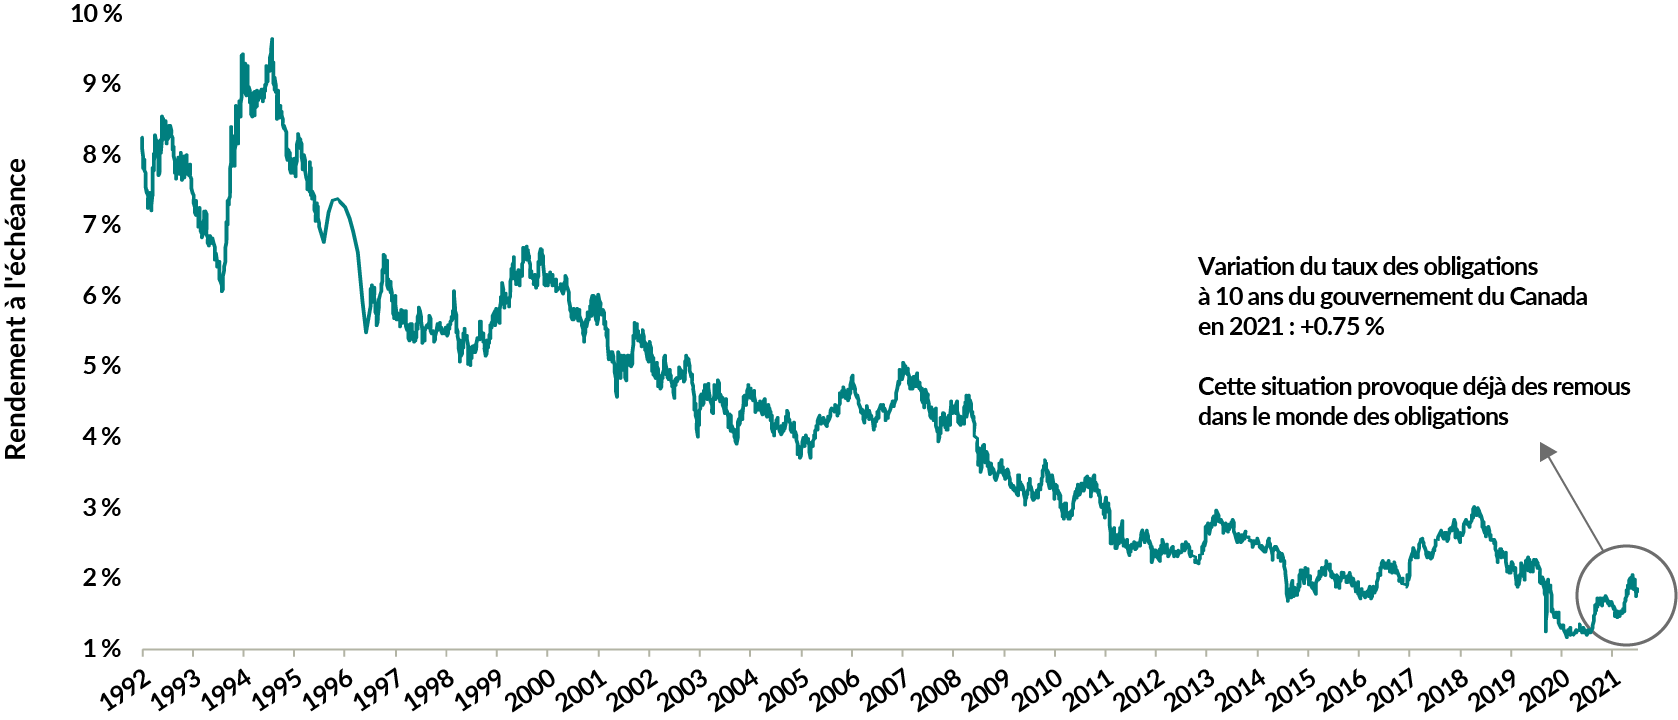 Un graphique montrant le rendement à l'échéance de l'indice ICE BofA Canada Broad Market du 30 juin 1992 au 31 décembre 2021. Il a commencé à plus de 8 %, a presque atteint 10 % au milieu des années 1990, puis est tombé à moins de 1,80 % à la fin de 2021. Du début de 2021 à la fin de l'année, le taux des obligations à 10 ans du gouvernement du Canada a augmenté de 0,75 %, ce qui a partiellement fait passer le rendement à l'échéance de 1,20 % à 1,84 %.